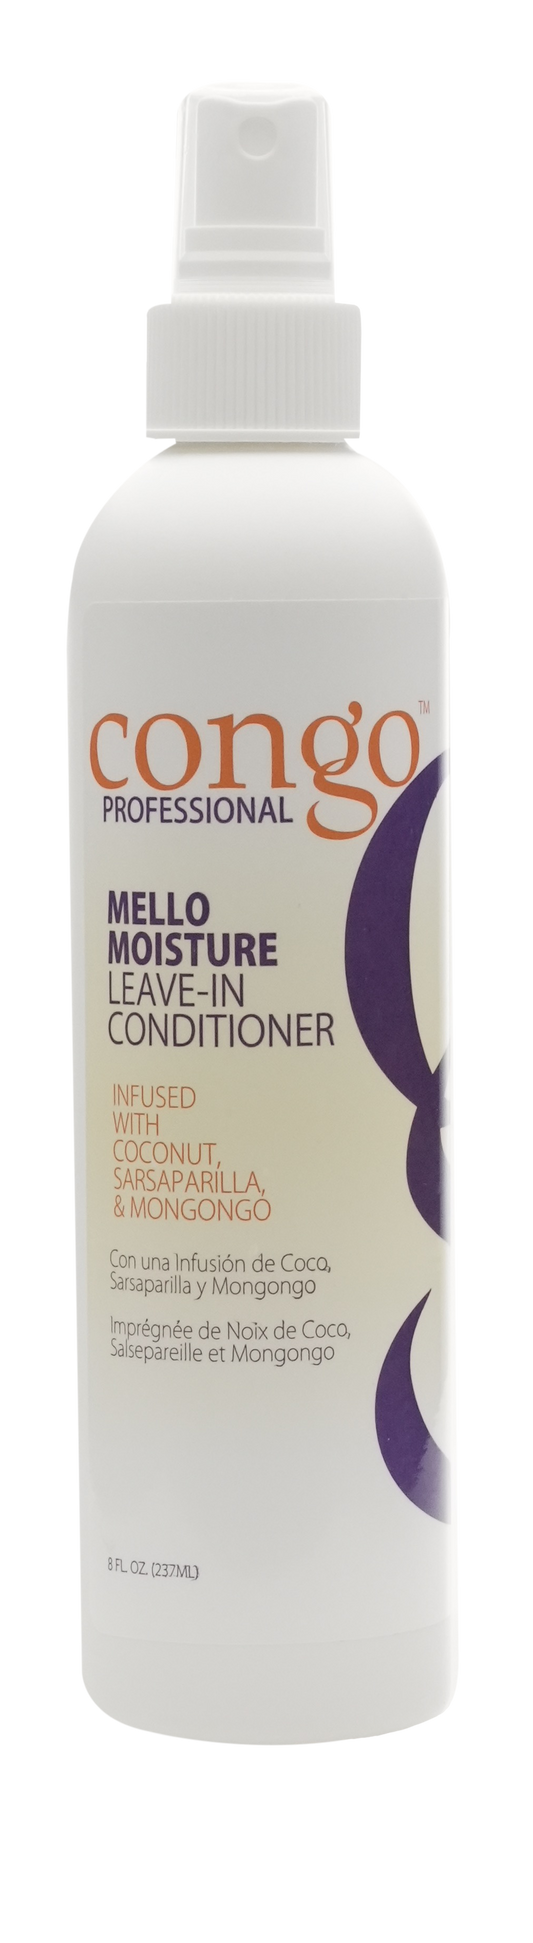 Congo - Mello Moisture - Leave-In Conditioner